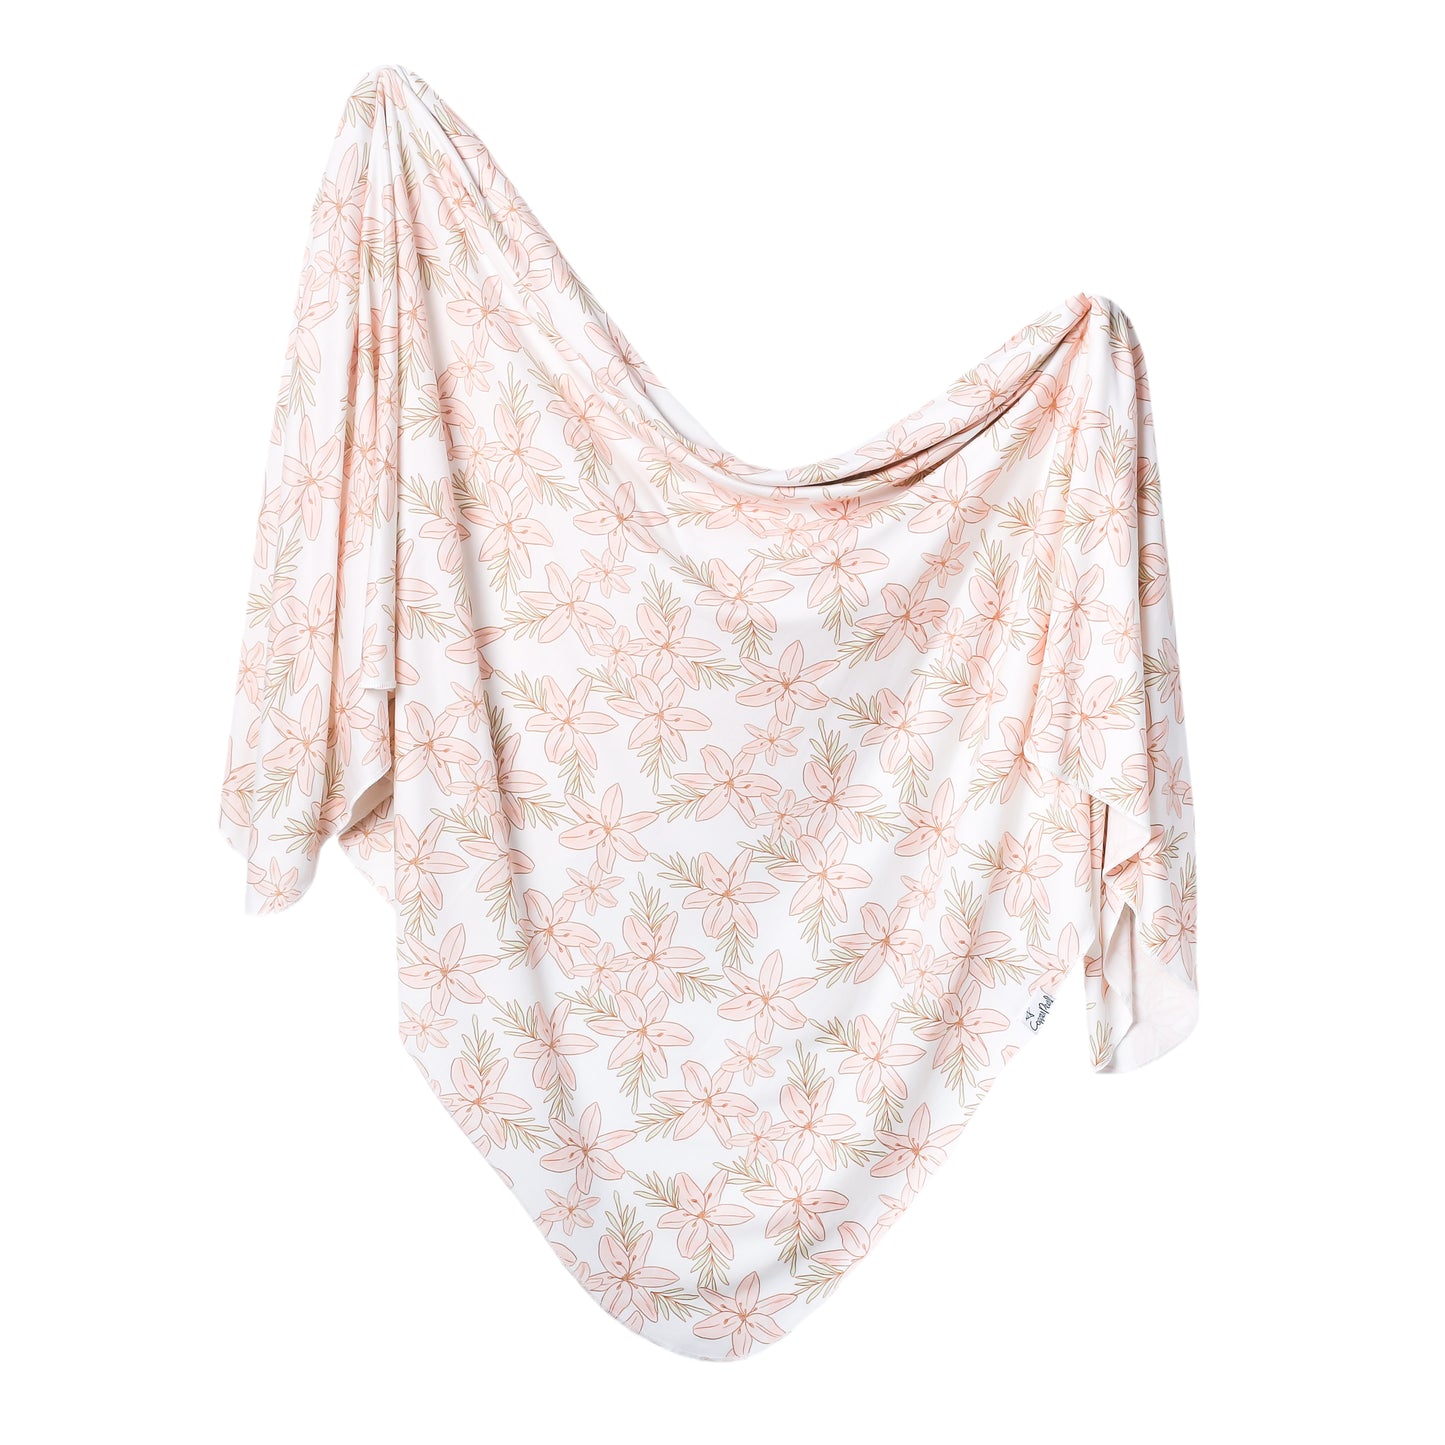 Copper Pearl Knit Swaddle Blanket - Kiana